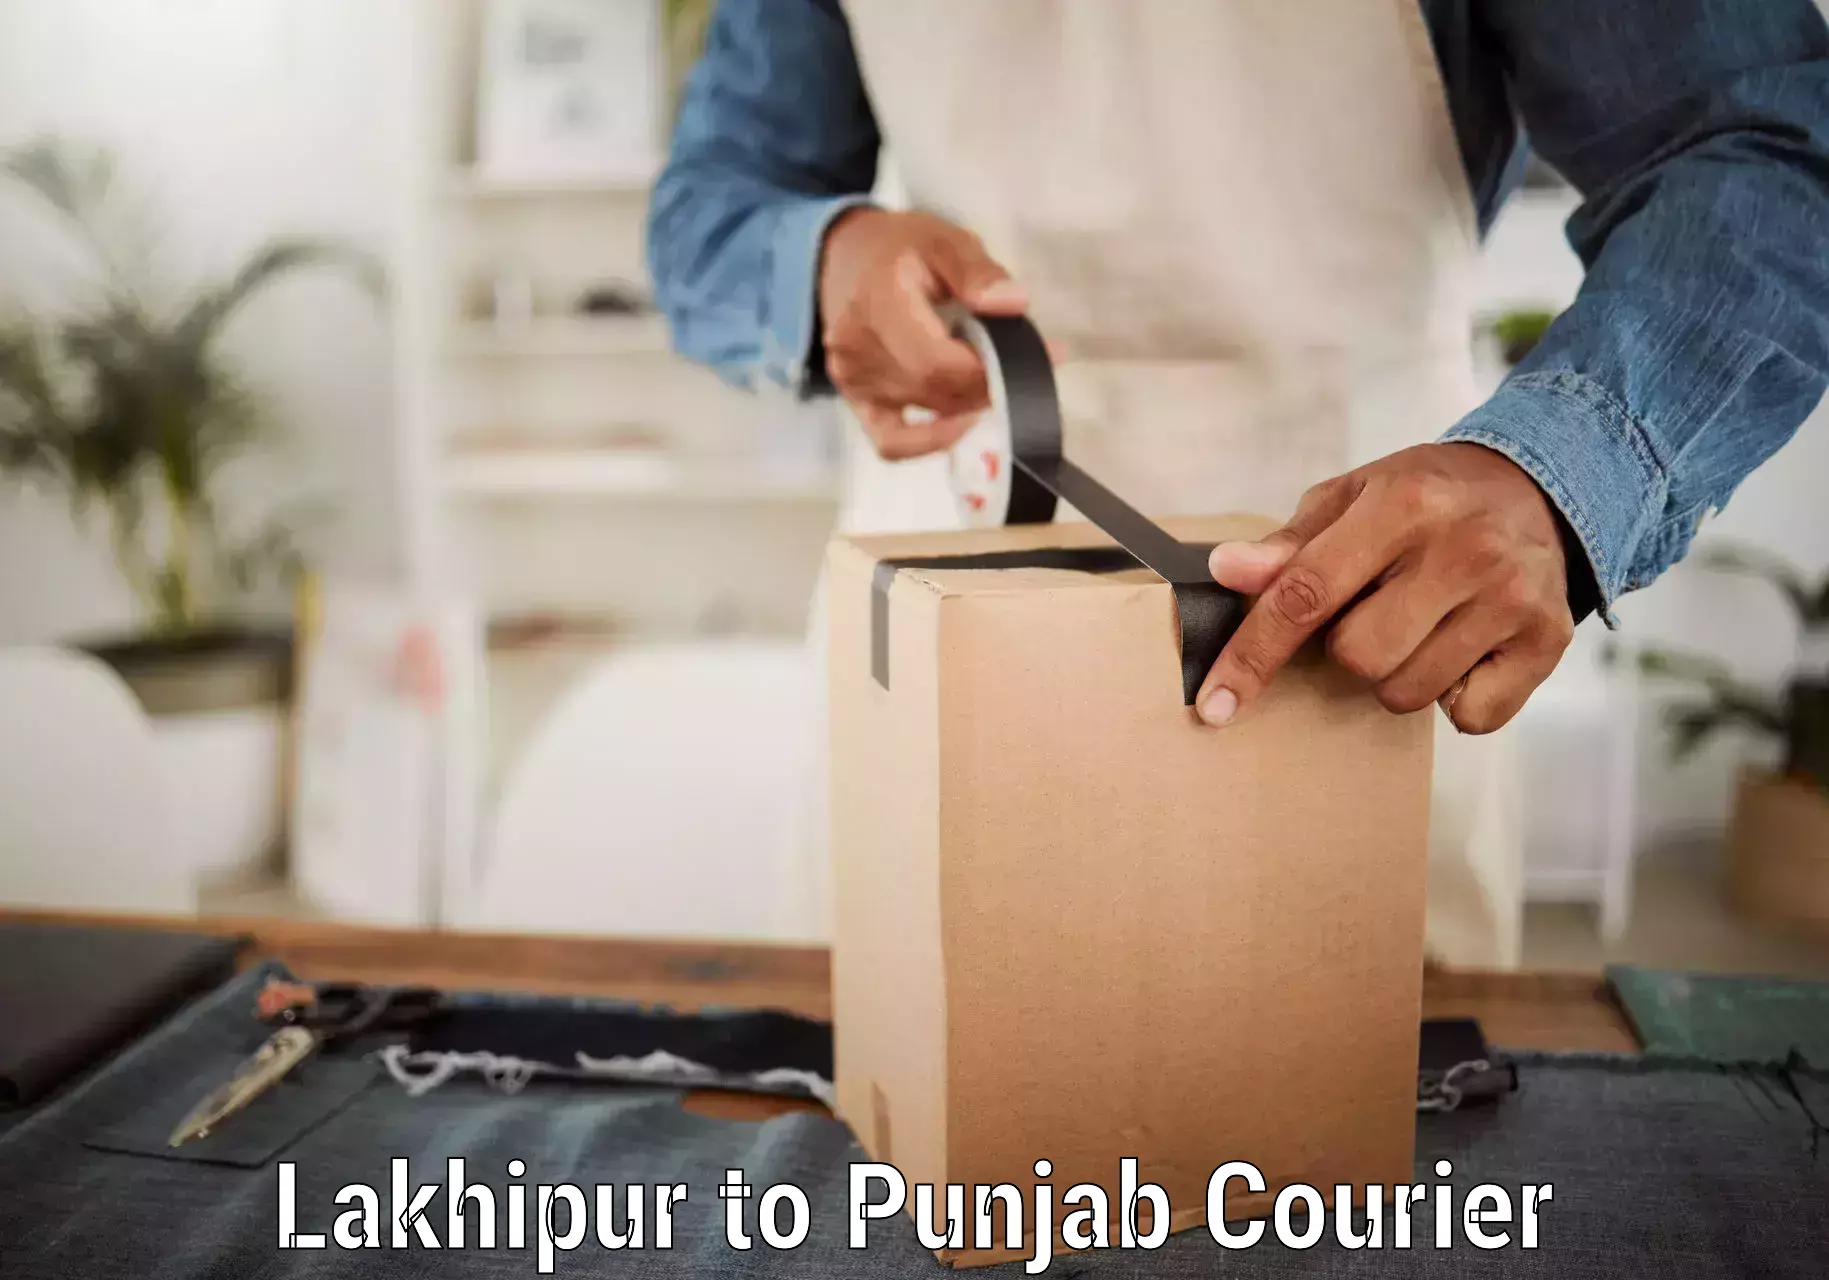 Optimized shipping routes Lakhipur to Jalandhar